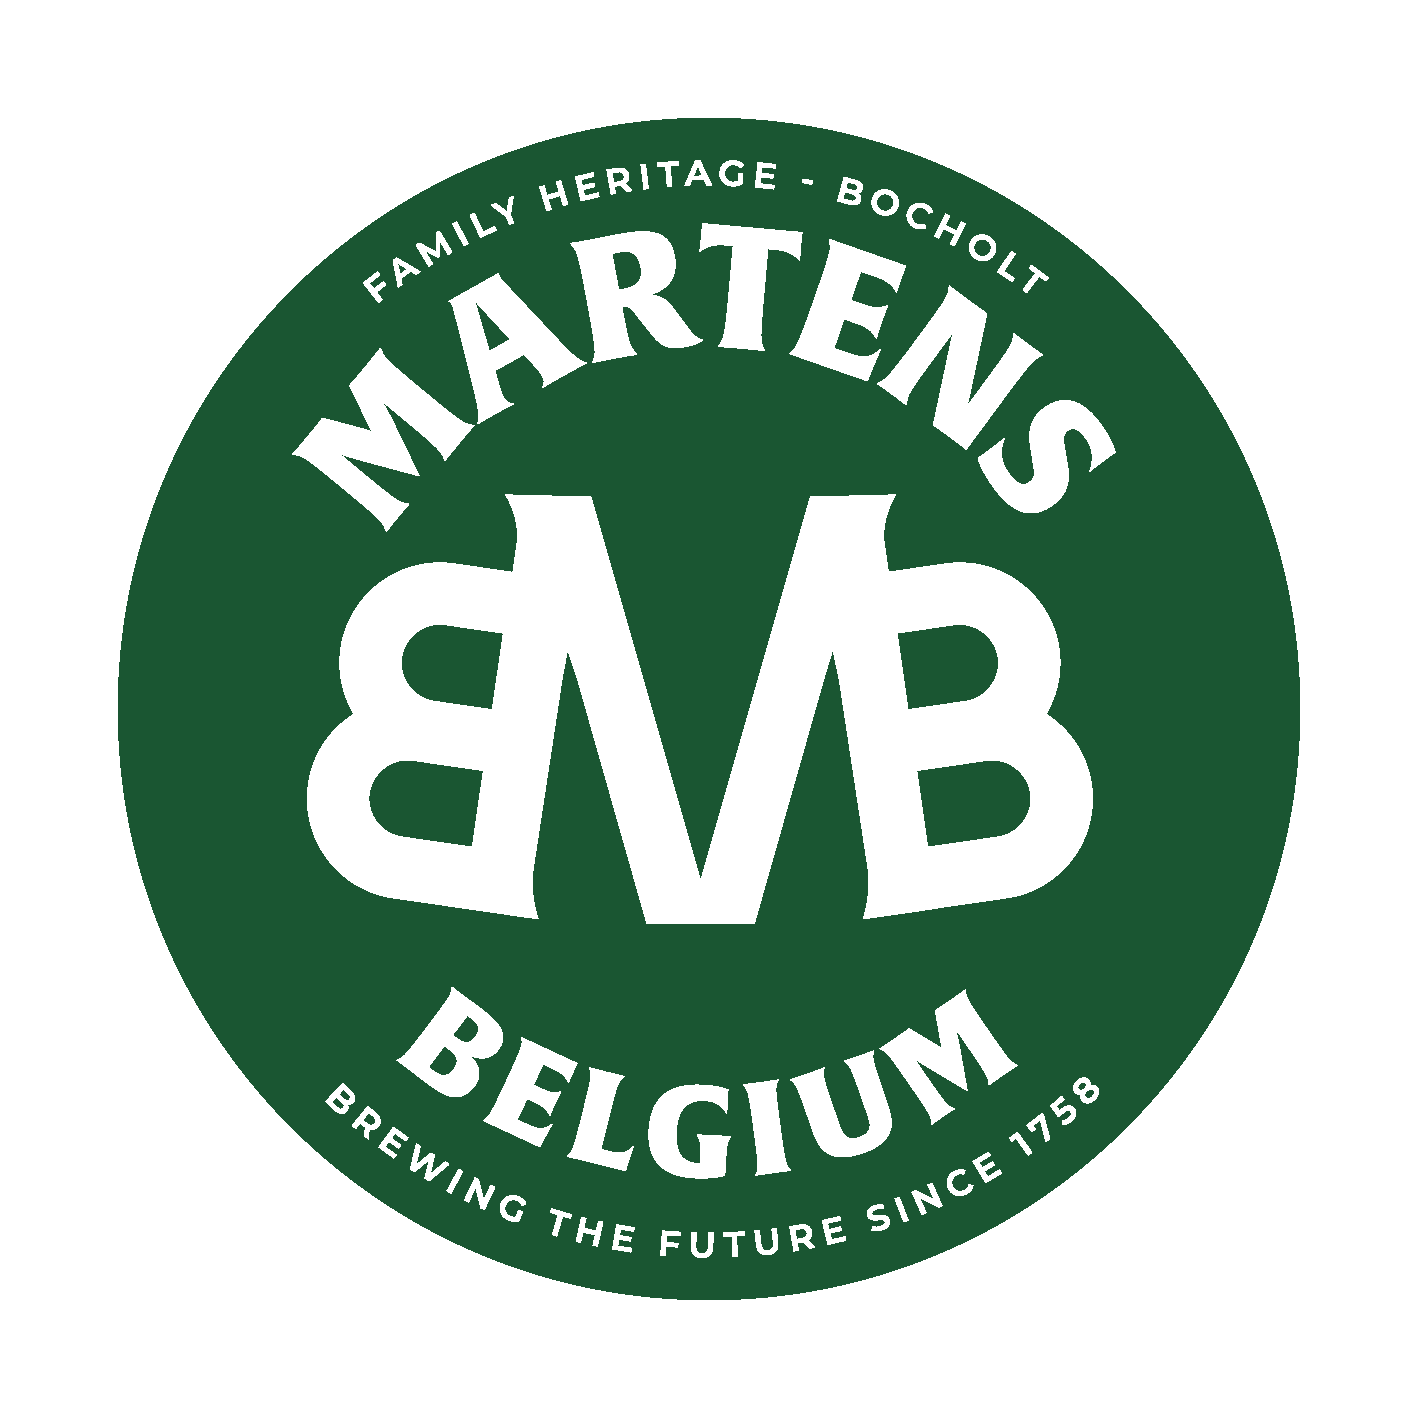 Brouwerij Martens jobs-logo